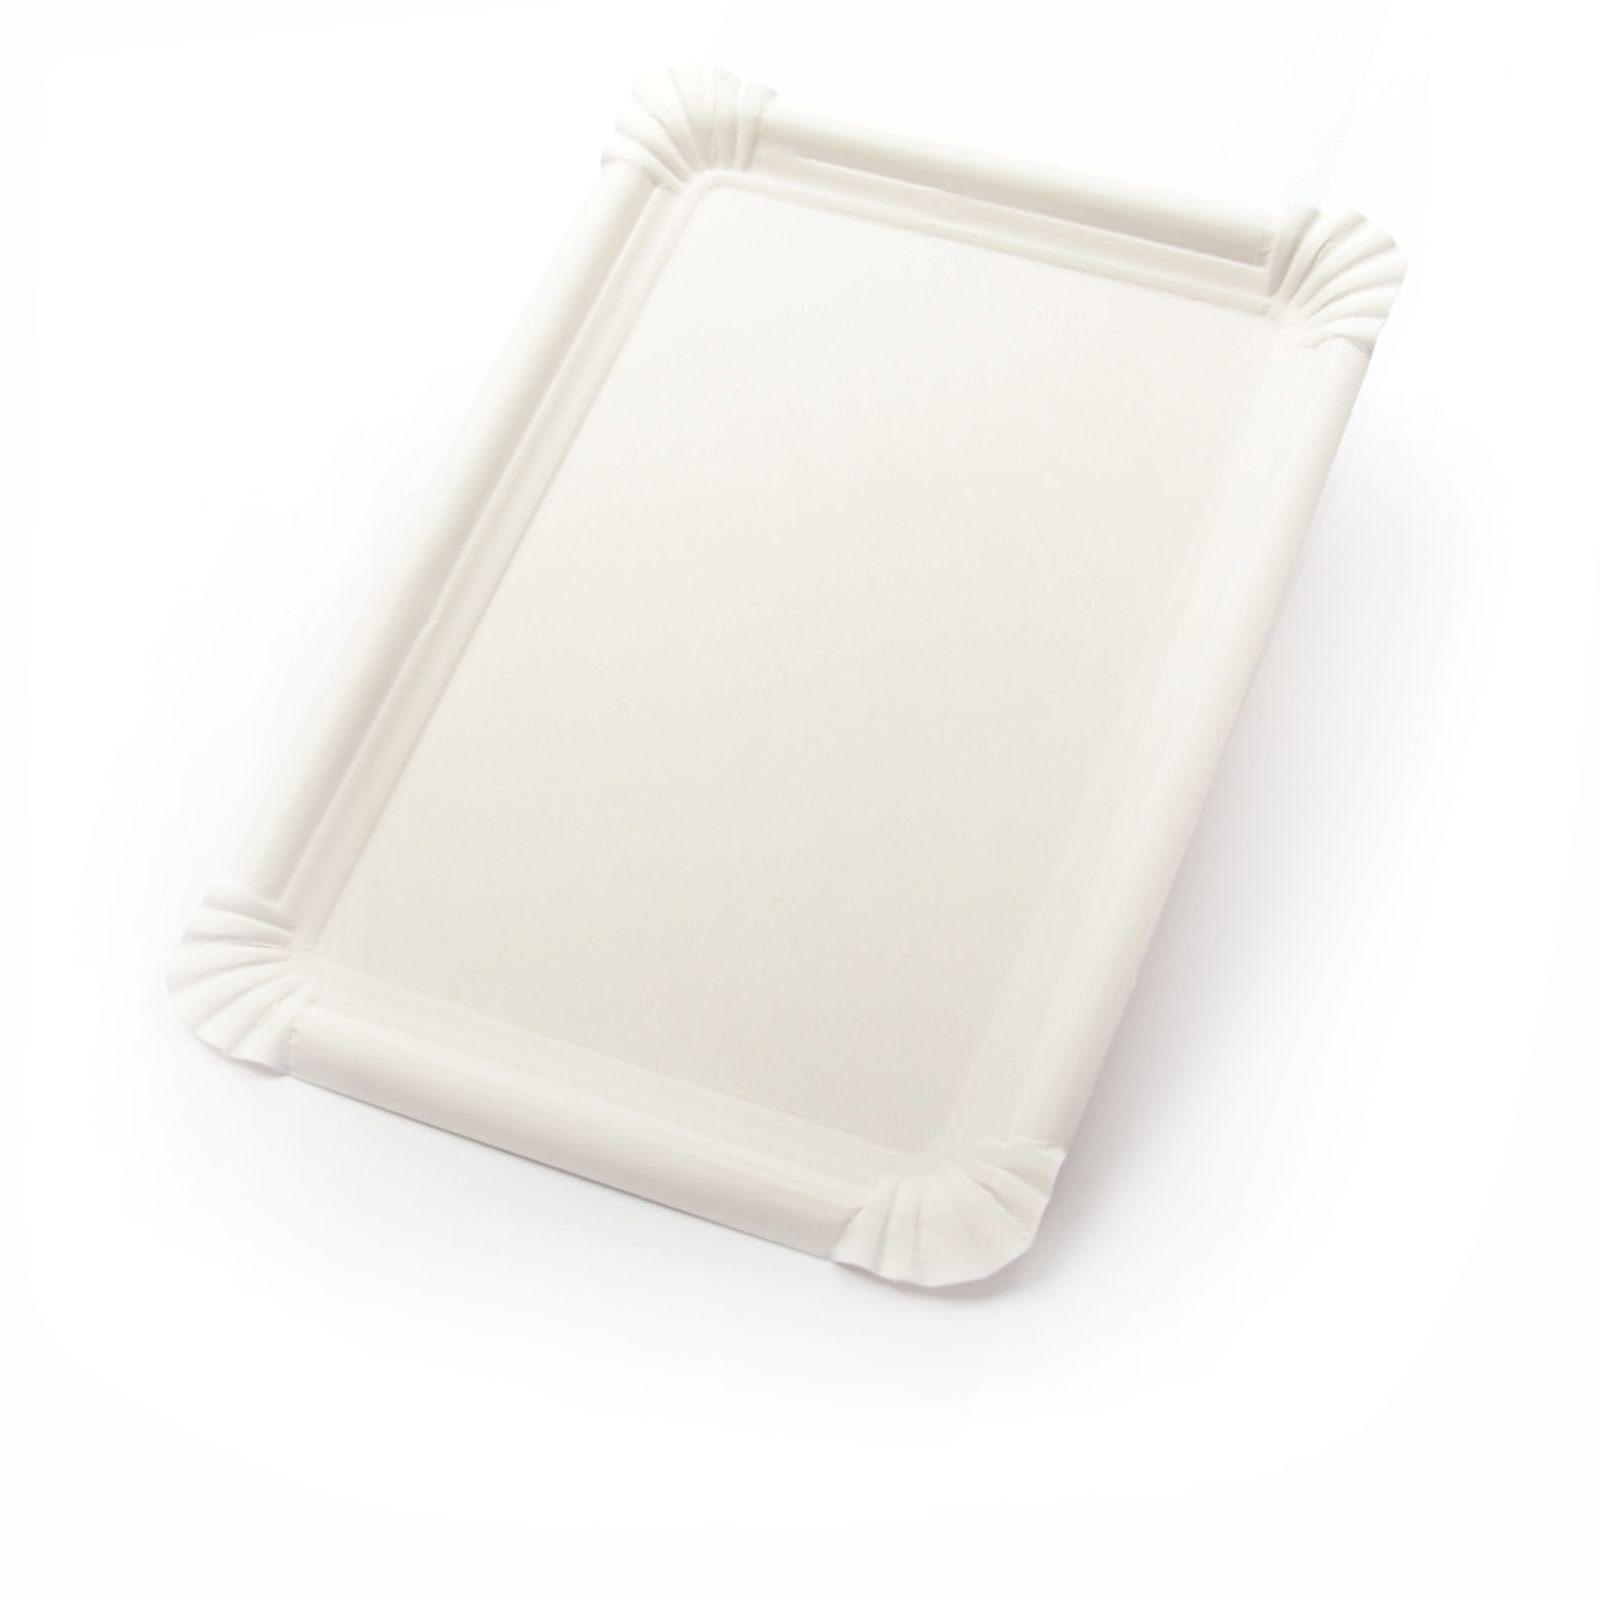 Kuchenunterleger Kuchenteller 1000 Beschichtung, Frischfaser ohne Stück rechteckig Imbissteller weiß, Tortenteller Einwegteller Pappteller (18×26 cm),